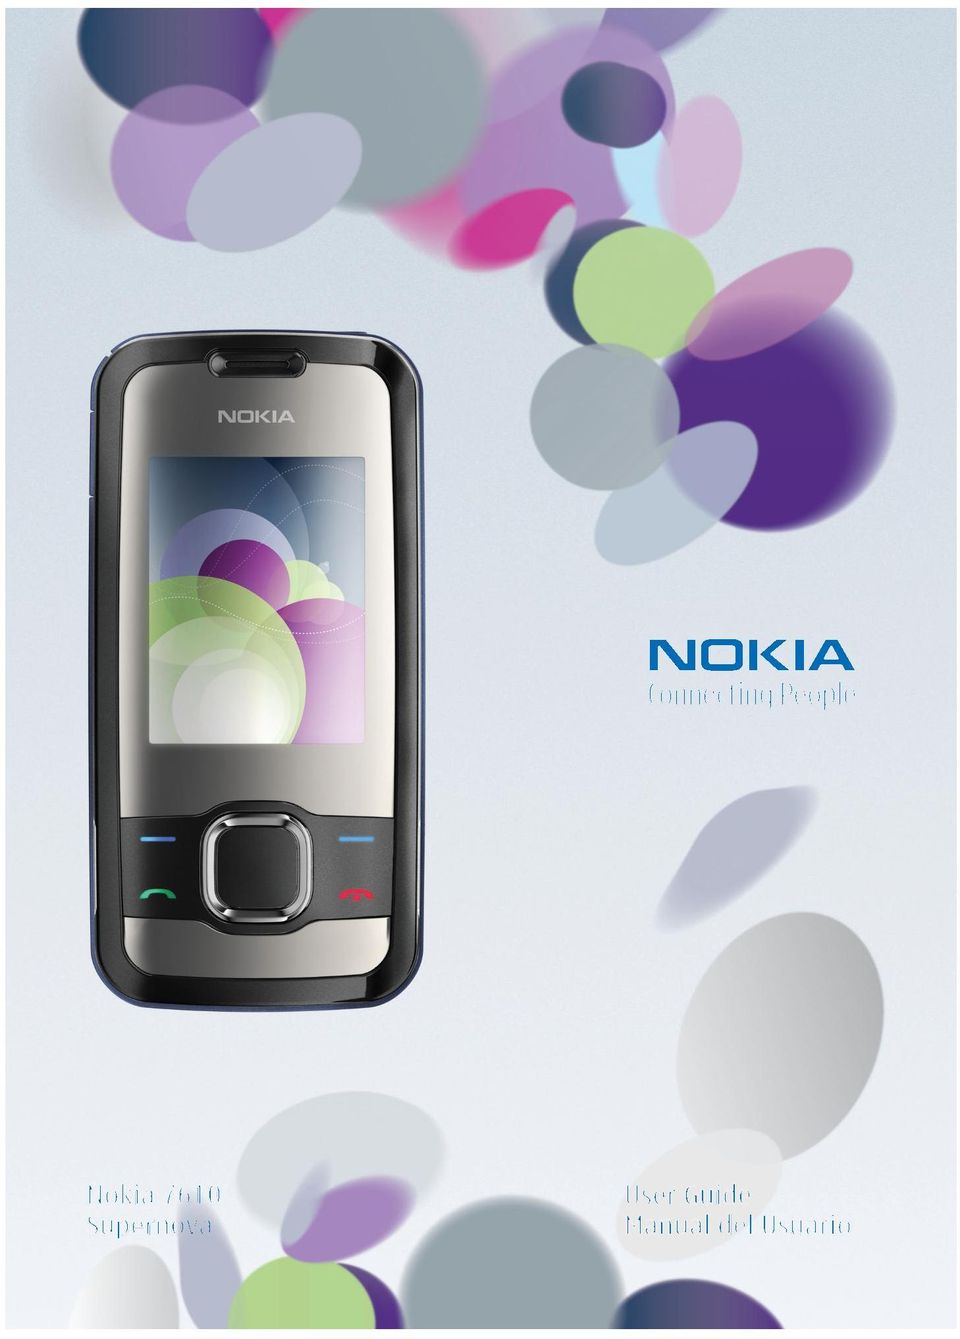 Product color may vary. Printed in Mexico. Copyright 2008 Nokia. Todos los derechos reservados.